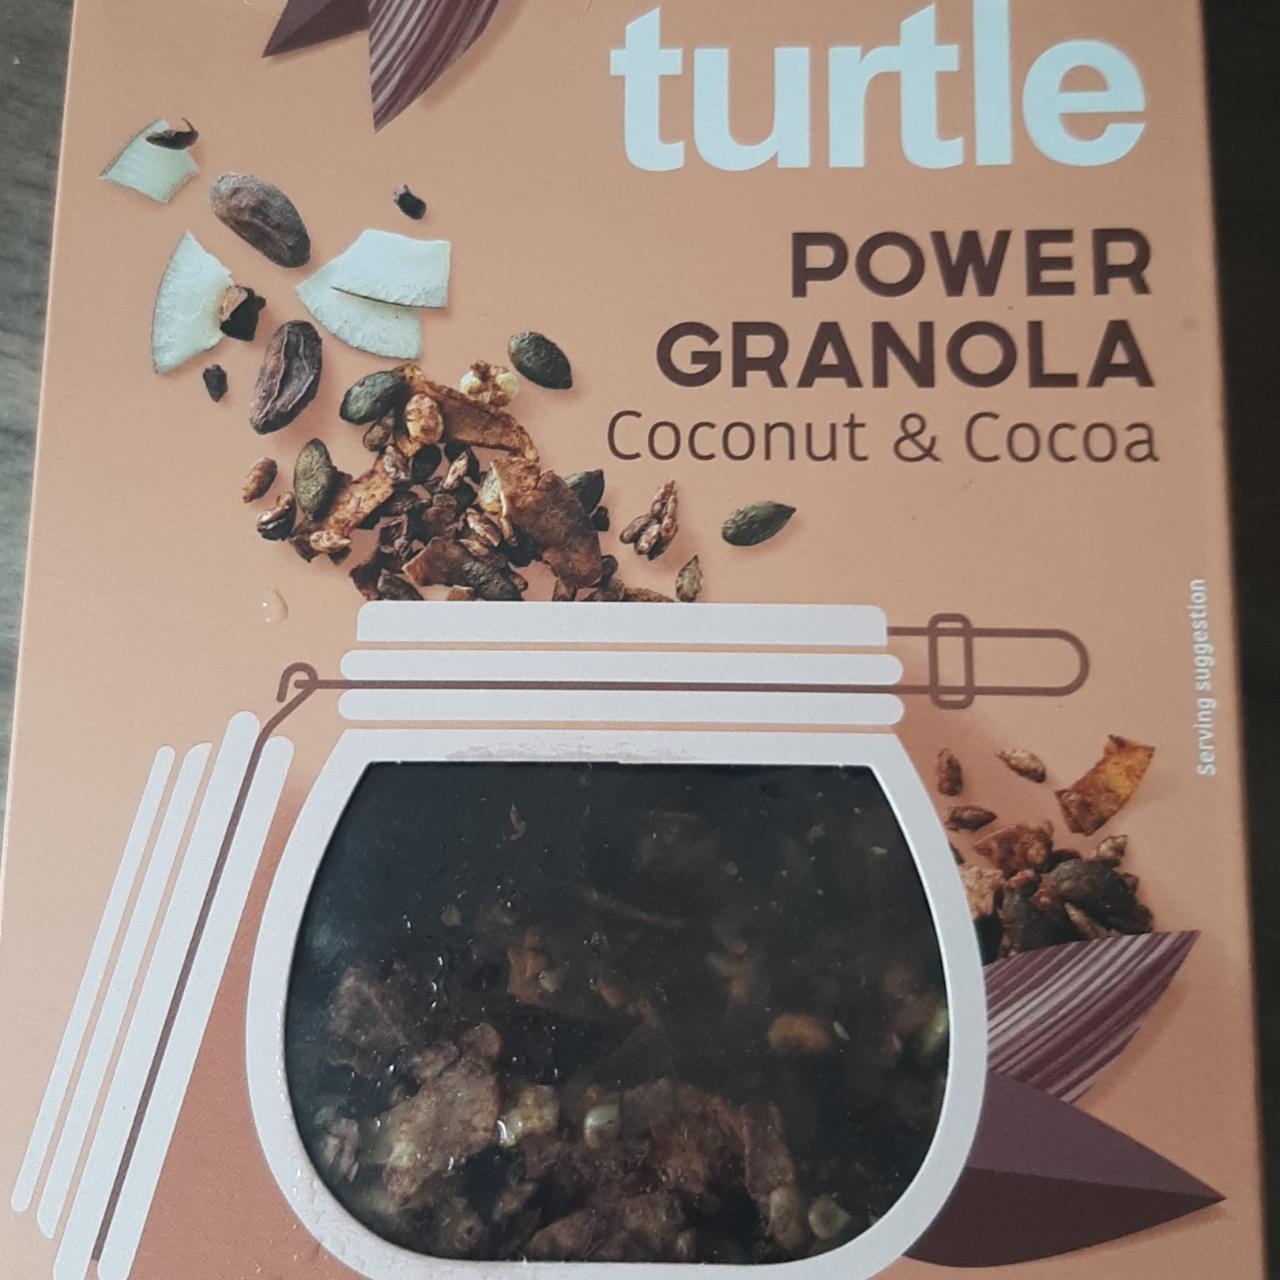 Fotografie - Power granola coconut & cocoa turtle